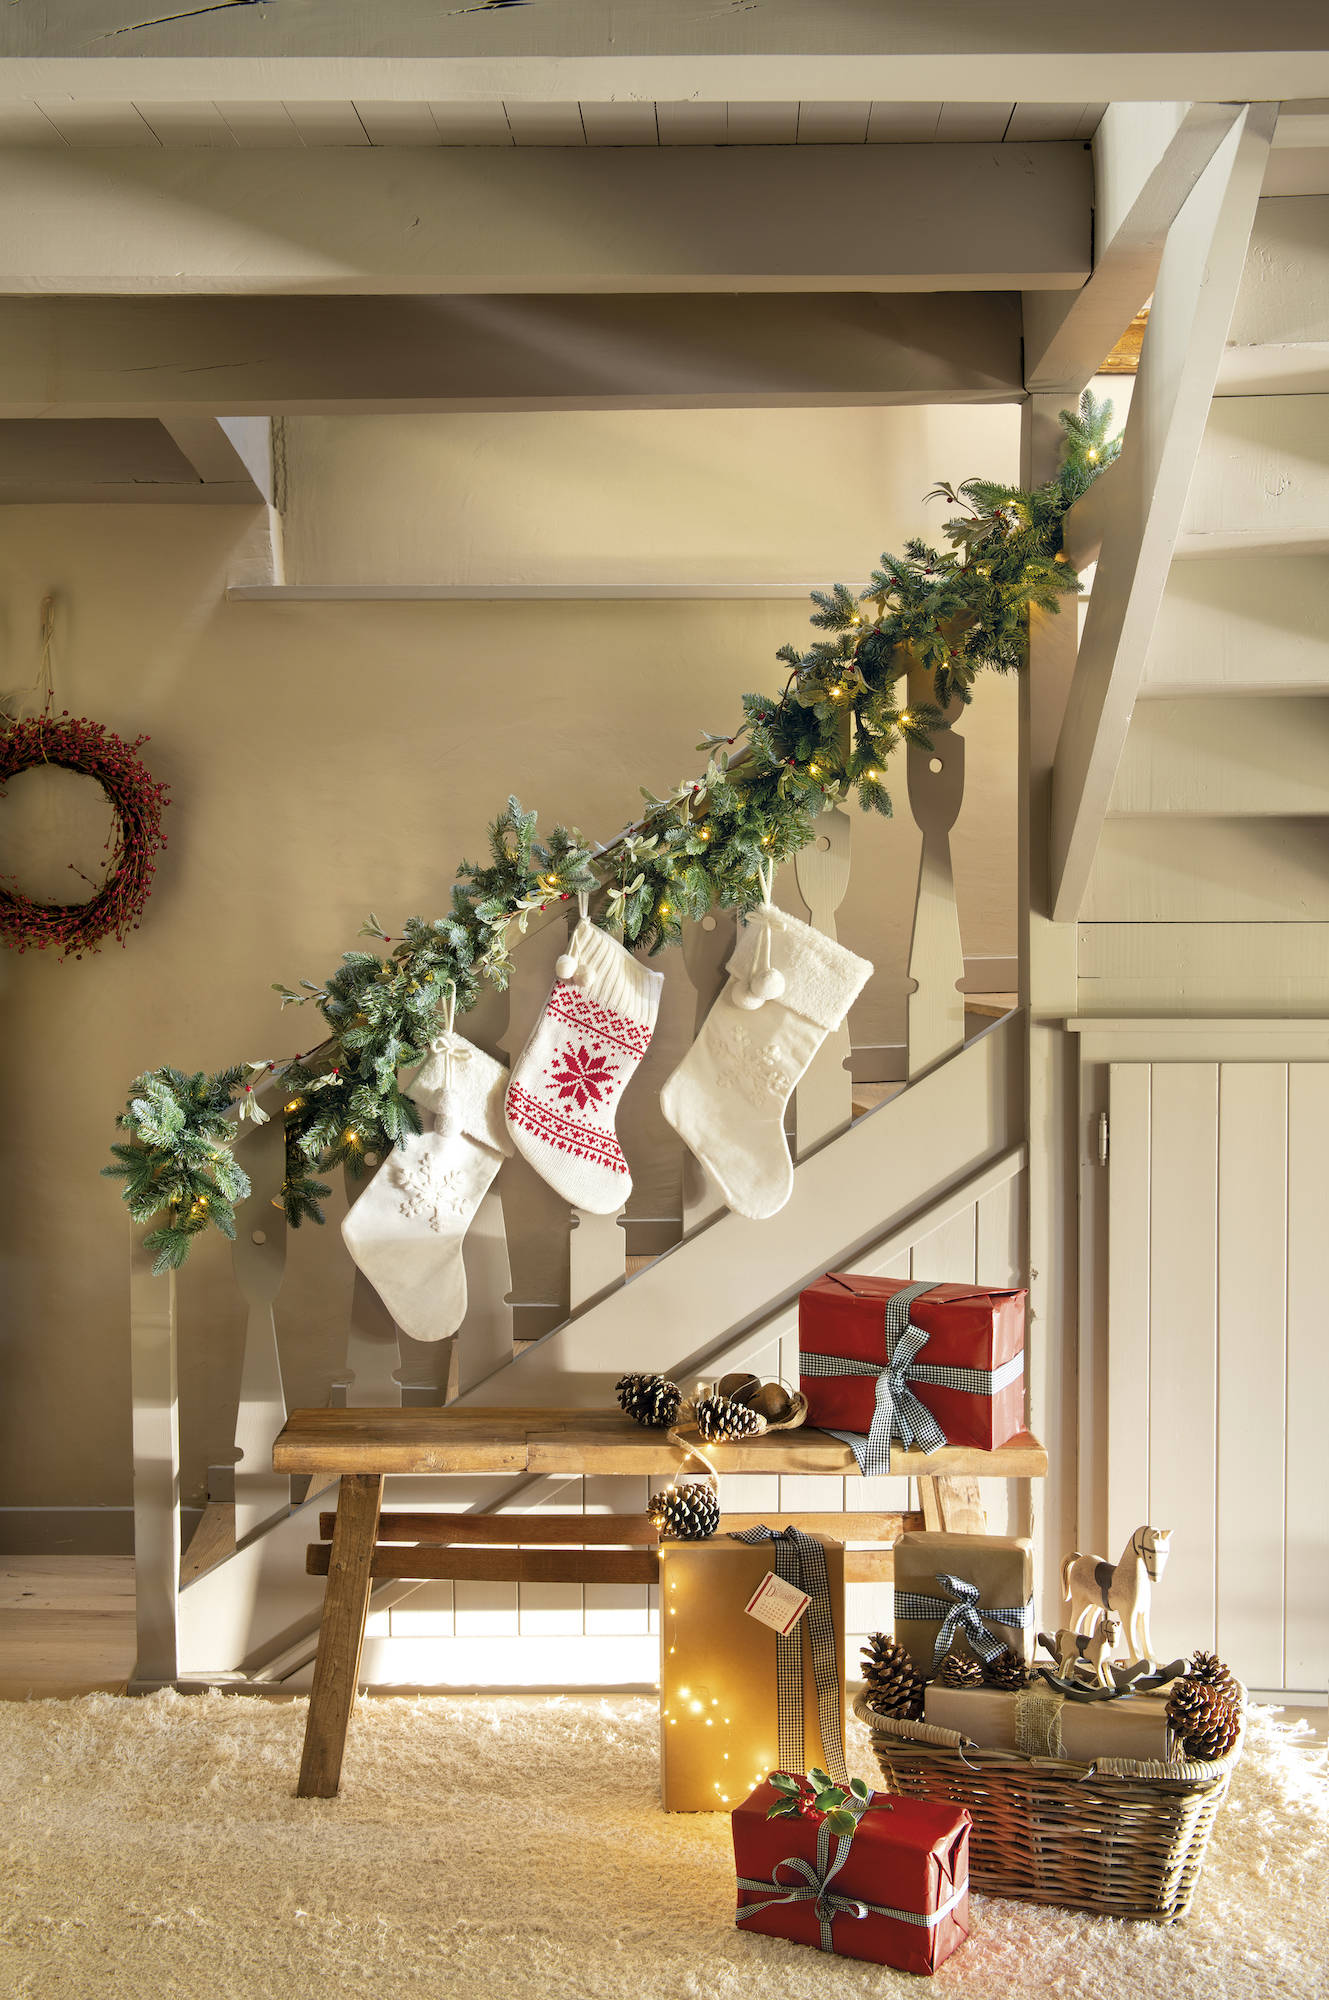 escalera decorada por navidad con calcetines 00548015